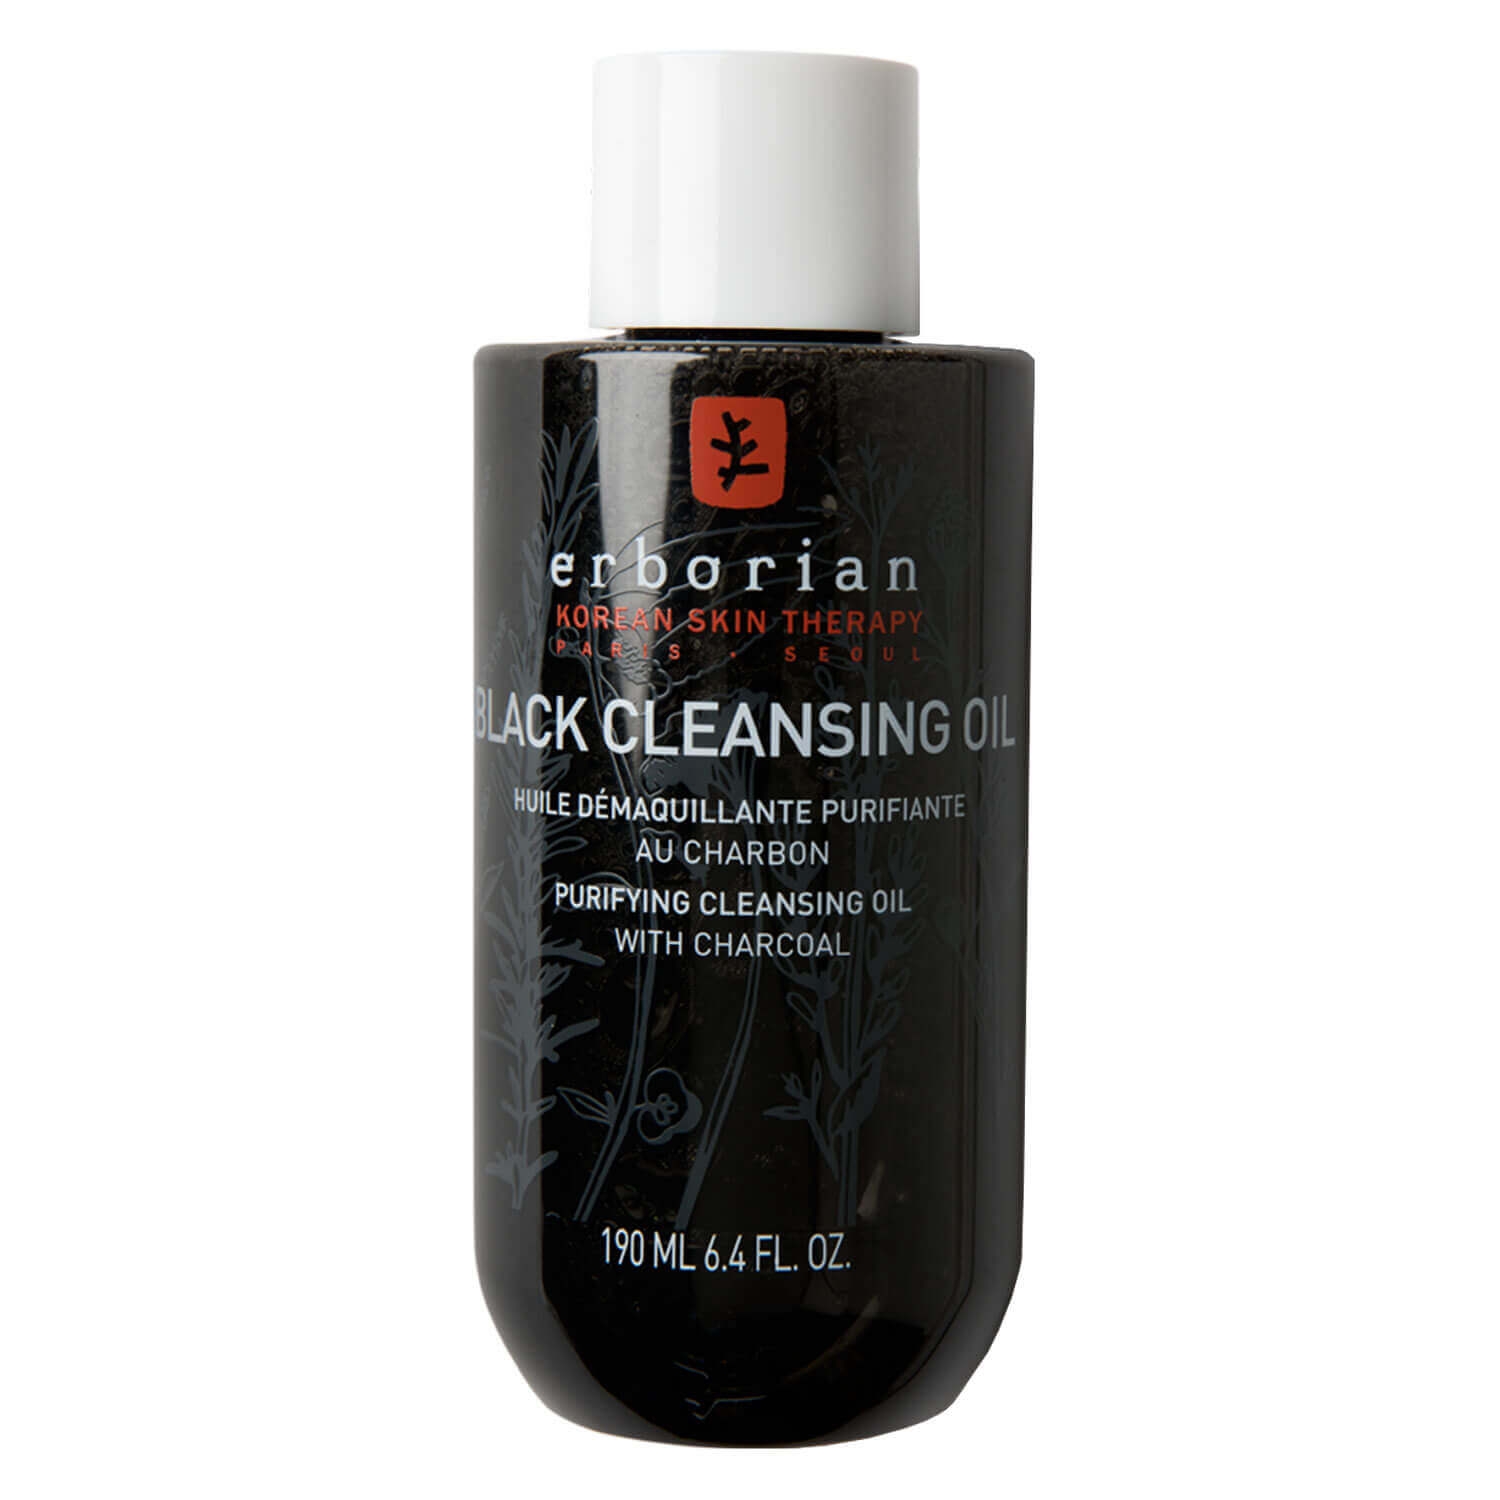 Produktbild von Charcoal - Black Cleansing Oil